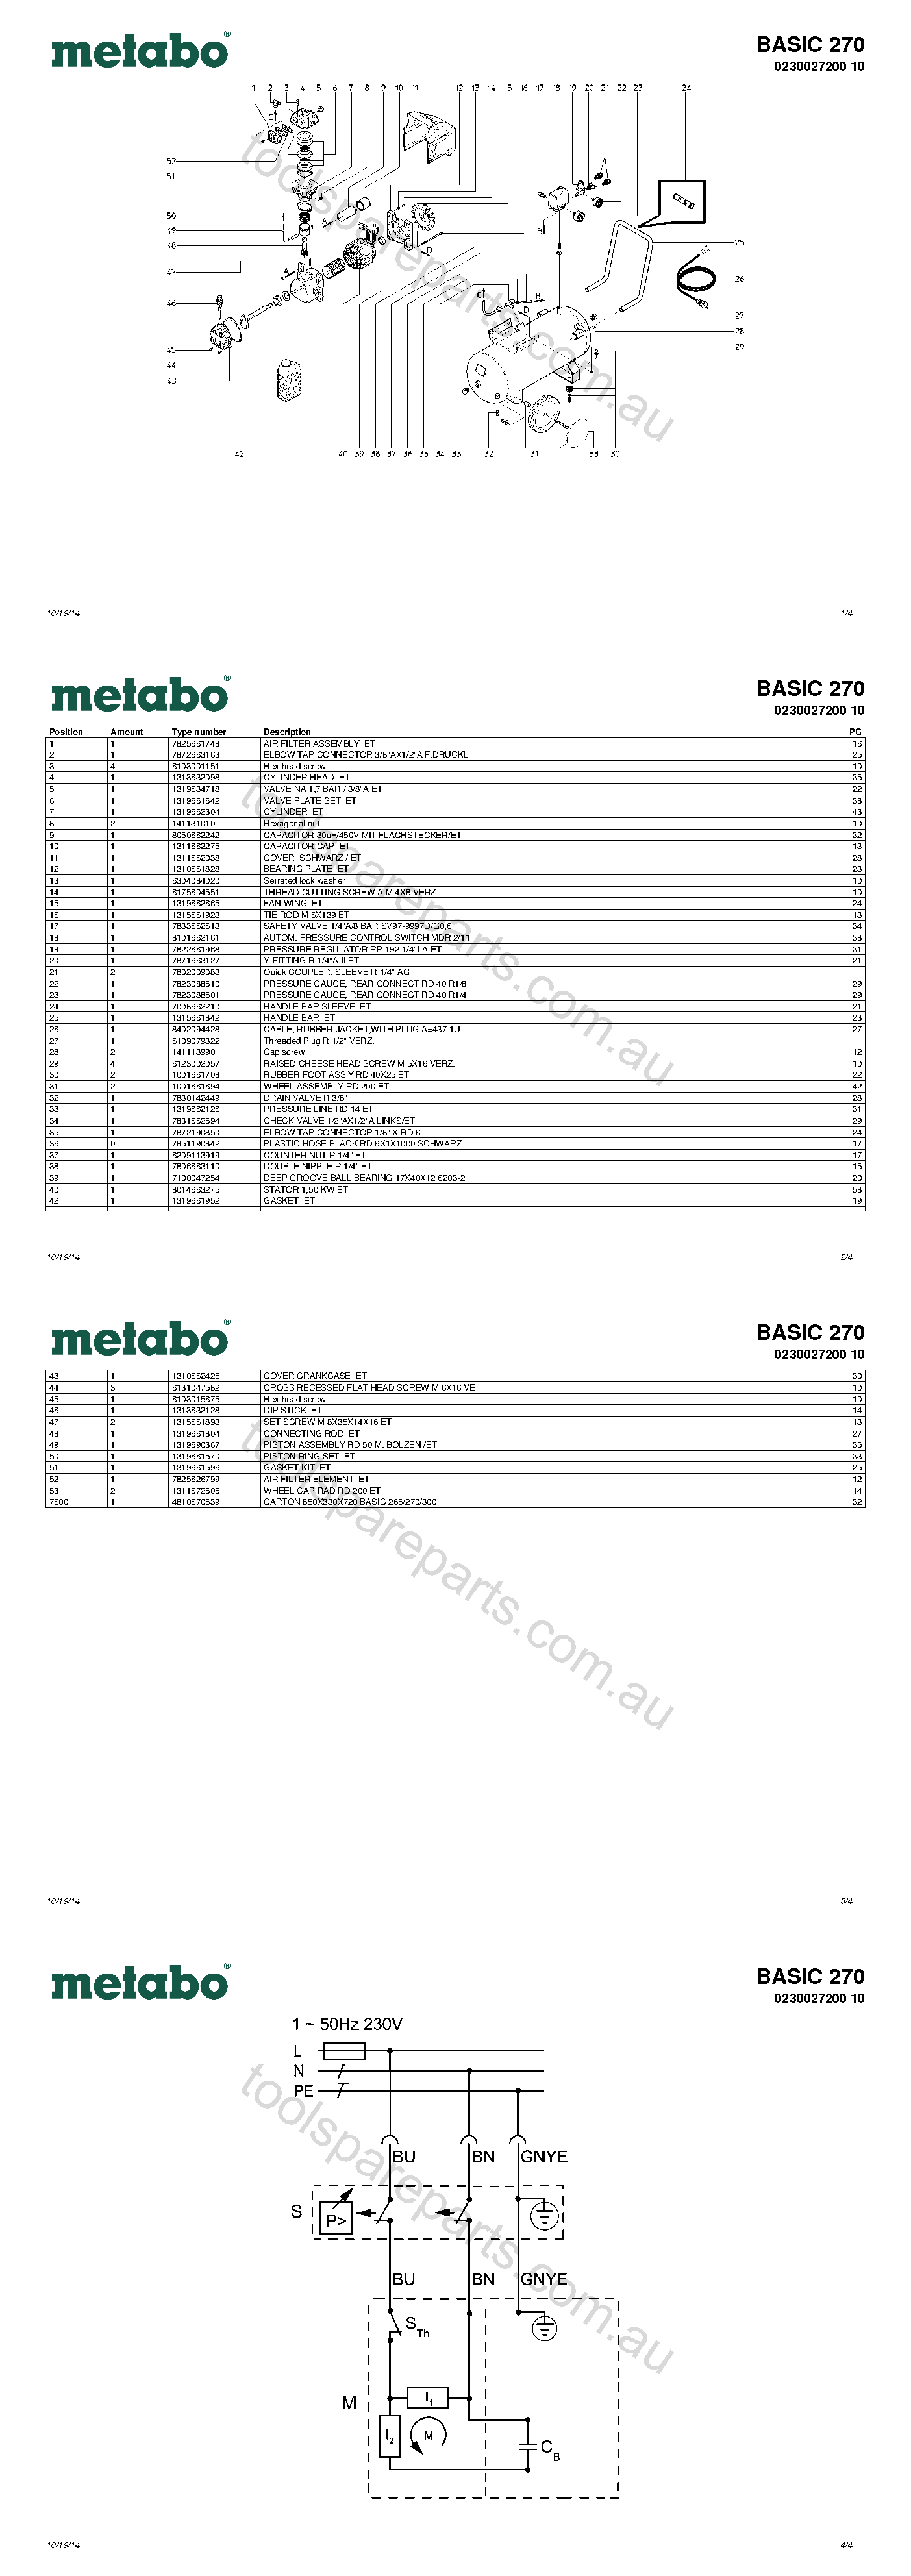 Metabo BASIC 270 0230027200 10  Diagram 1